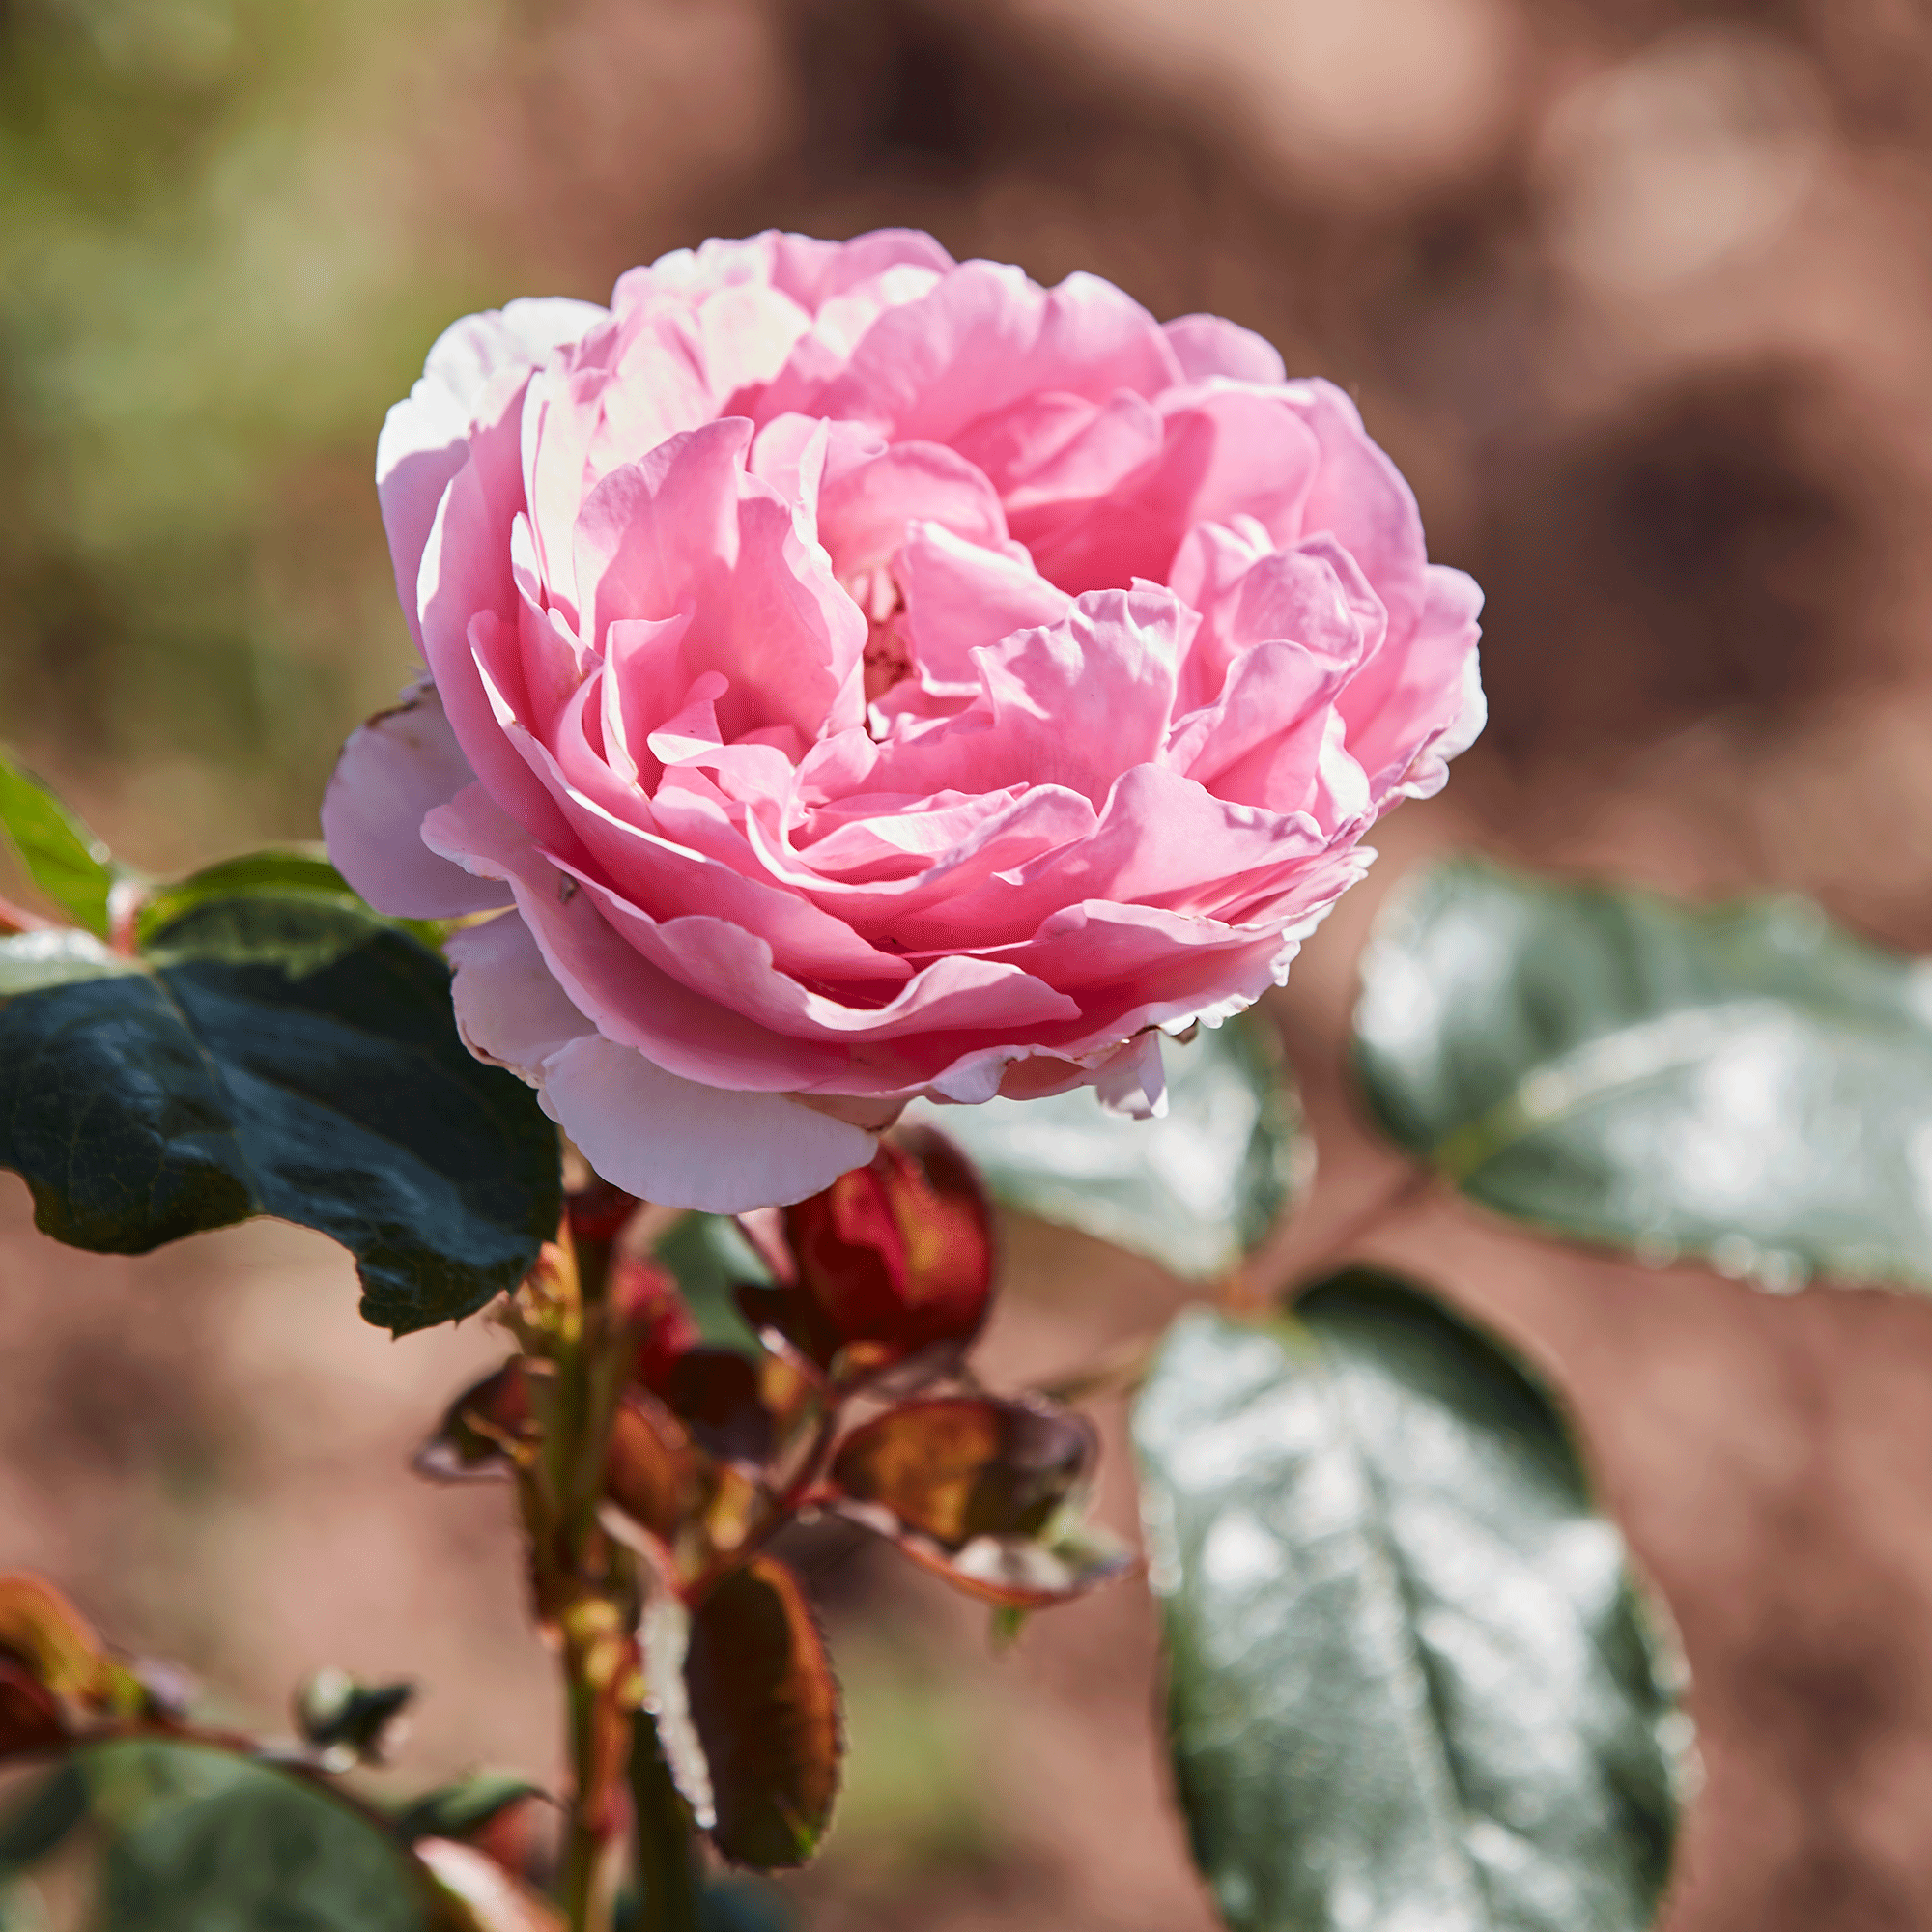 Roses in garden